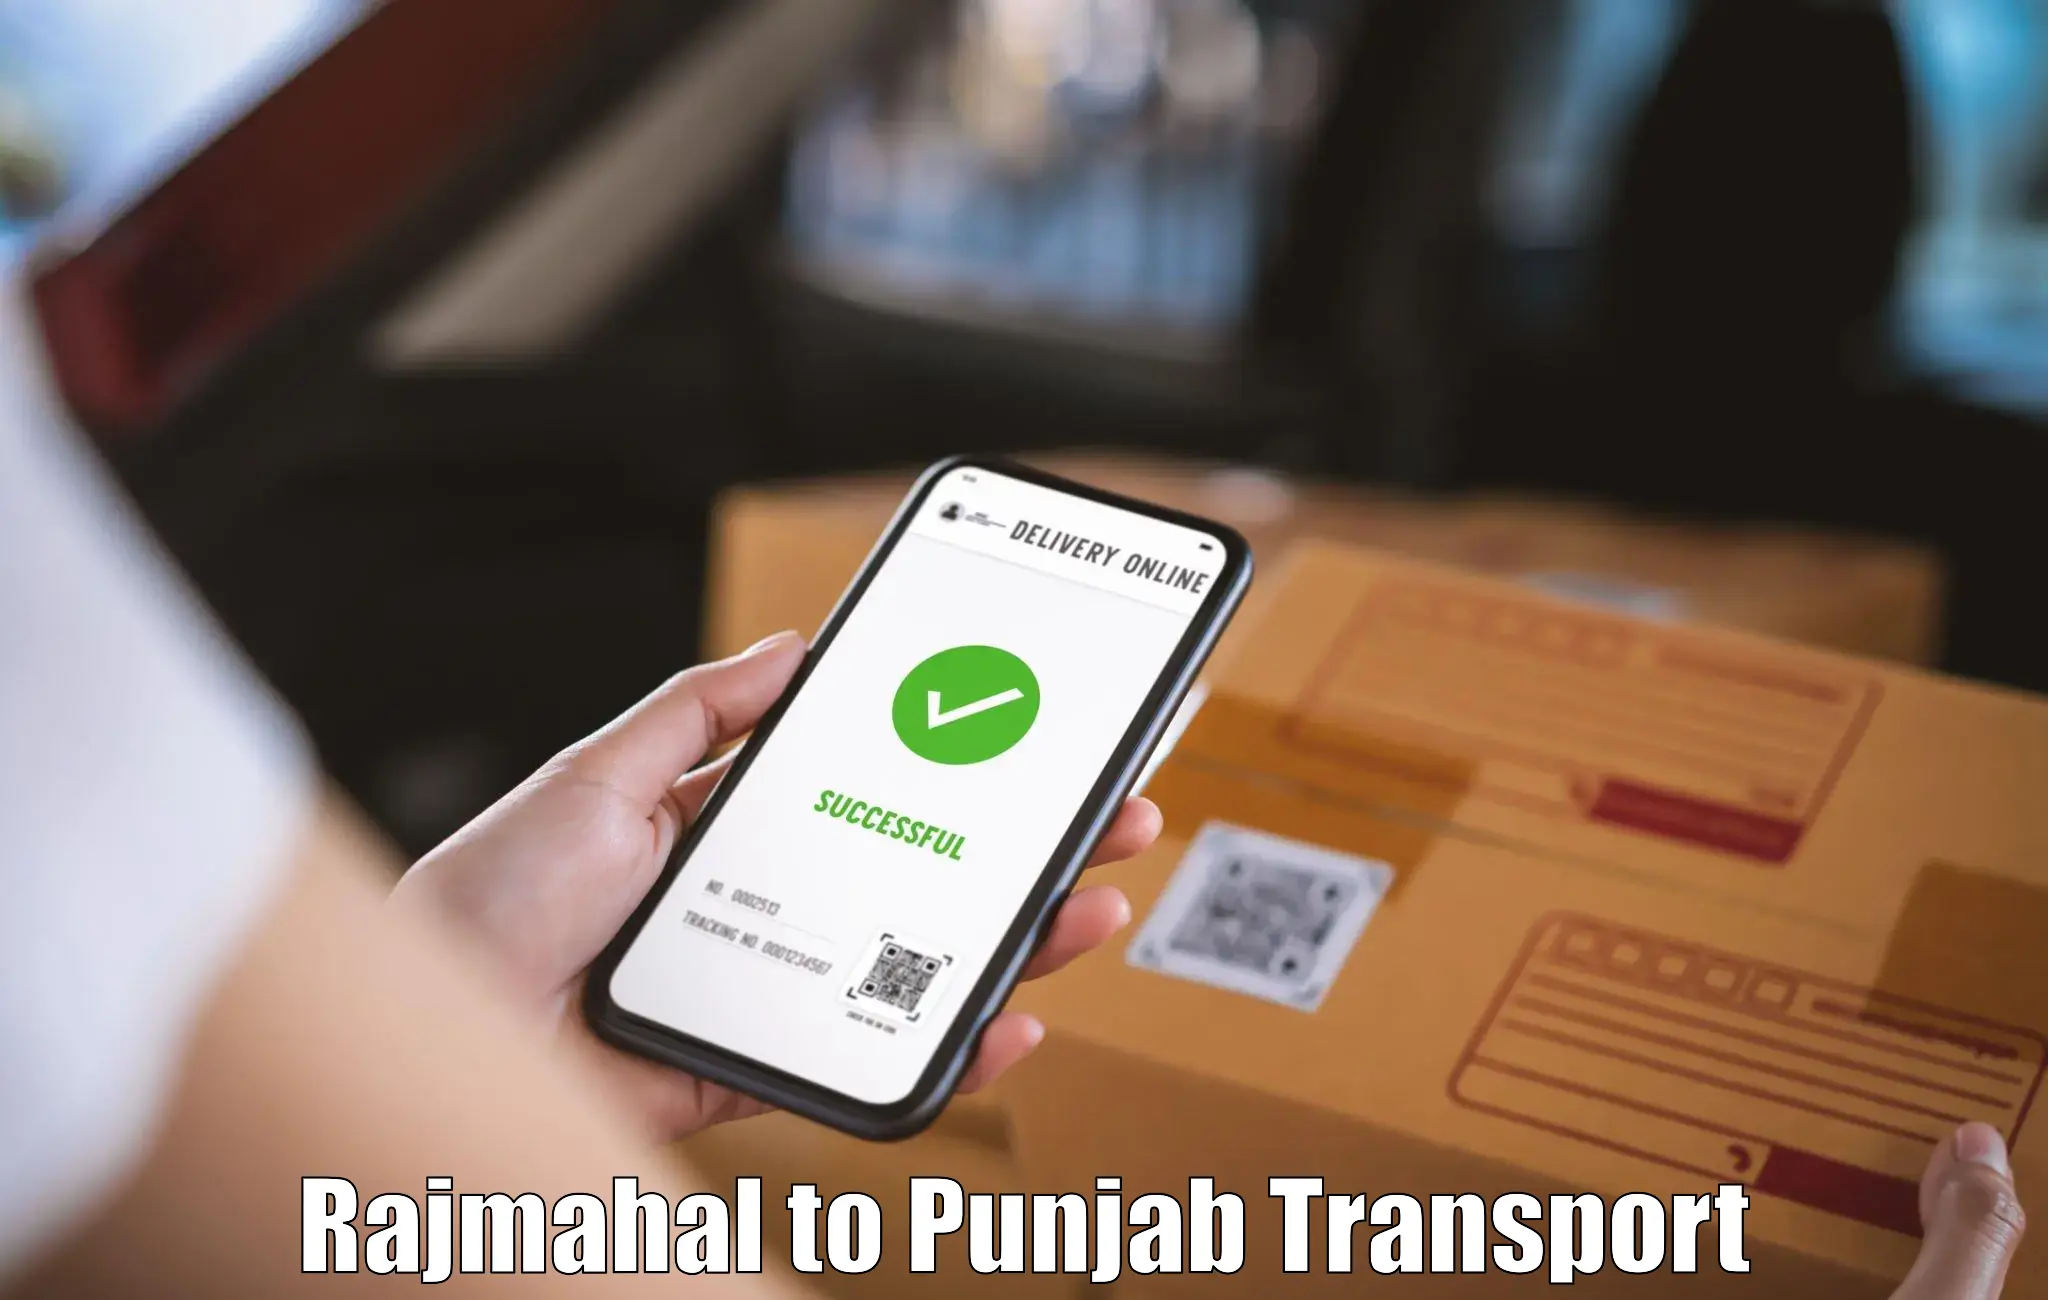 Transport in sharing Rajmahal to Jalandhar